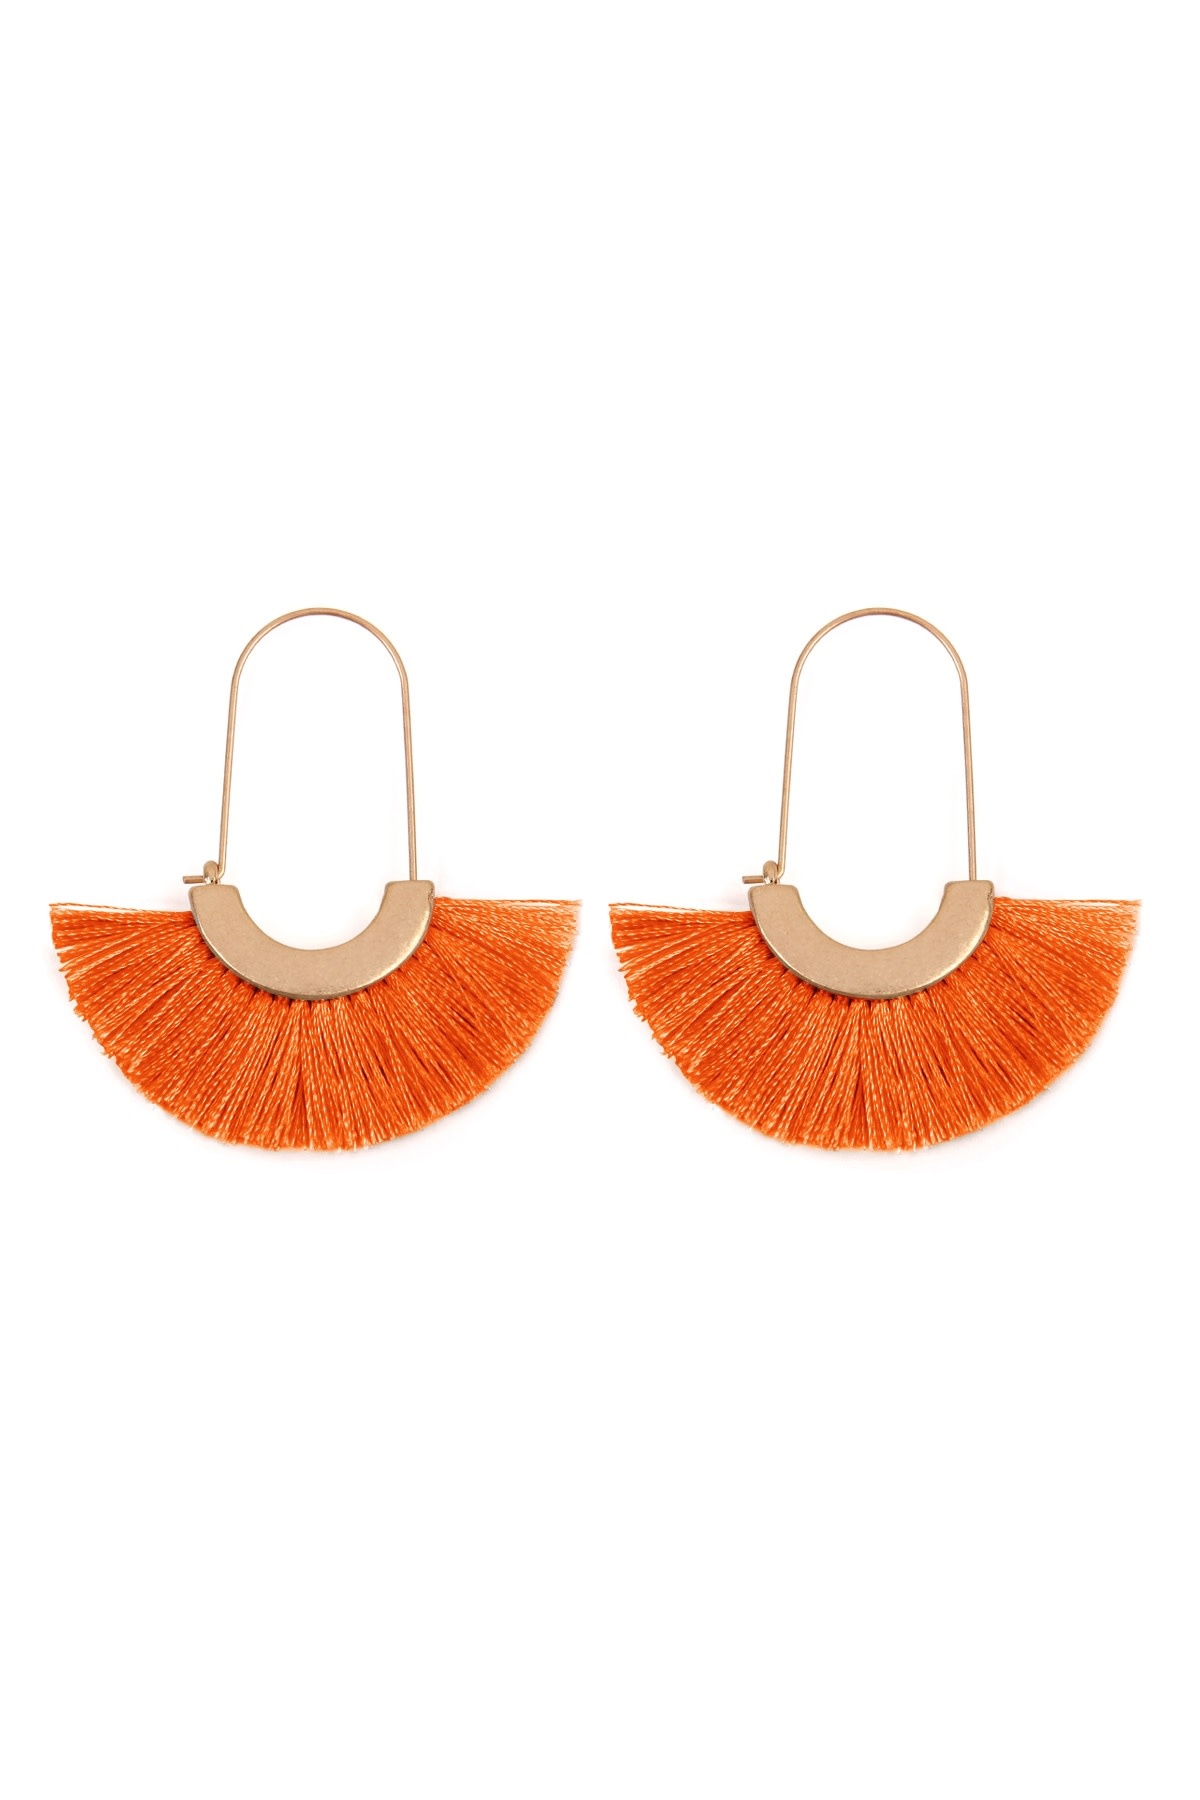 FLEURISH Orange Fan Shape Drop Hoop Earrings